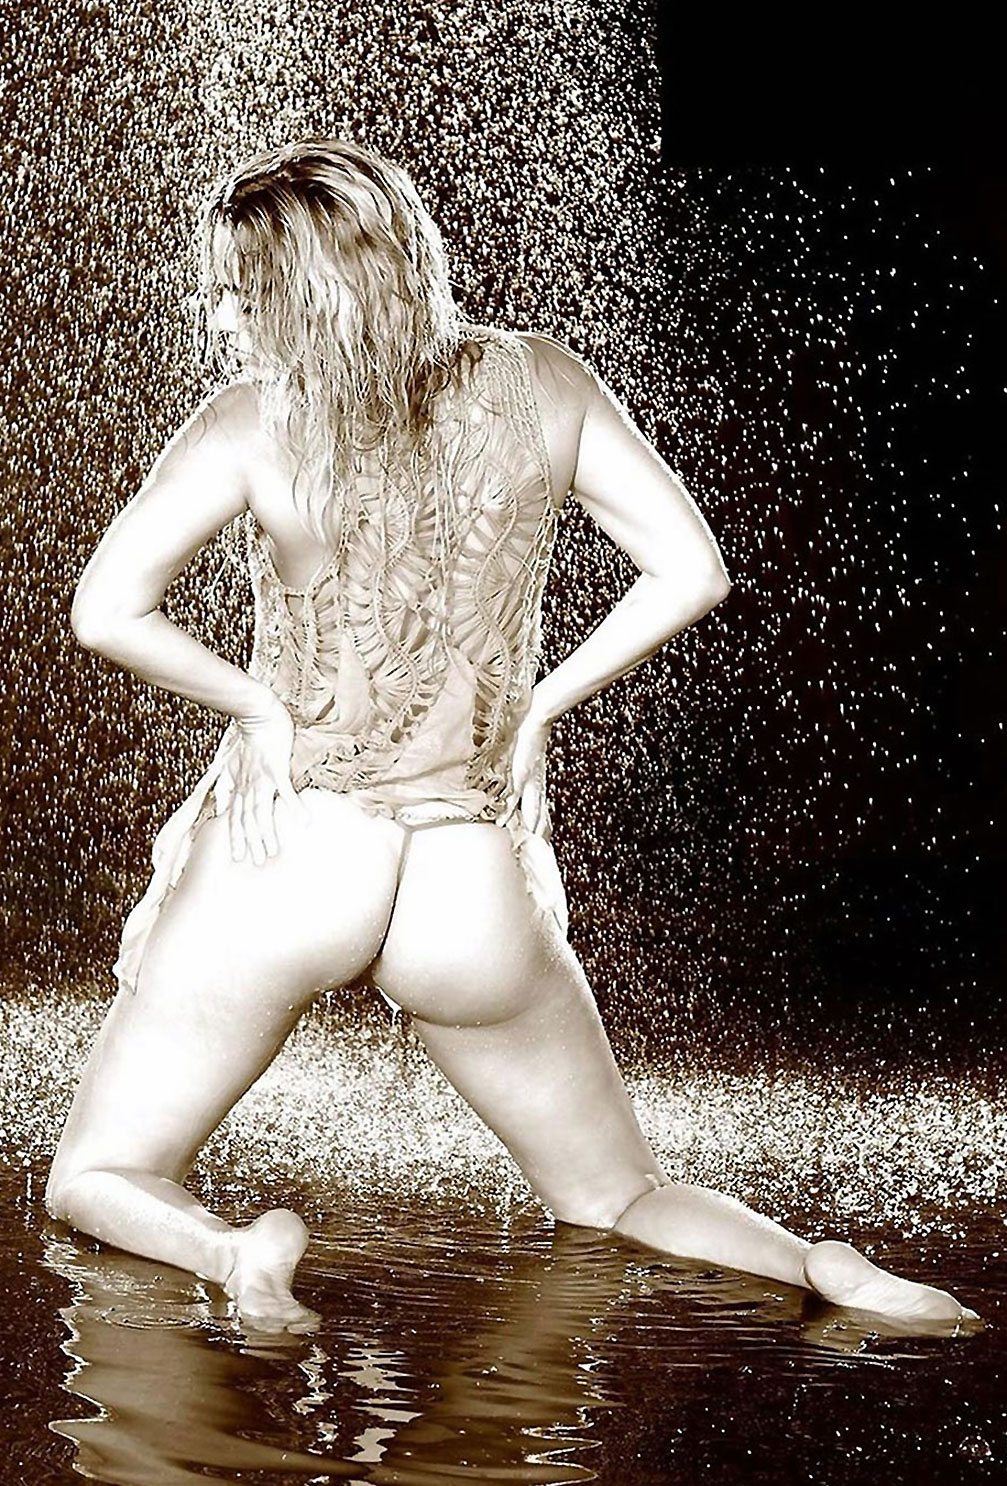 Lana WWE nude hot sexy bikini topless LeakedDiaries 8